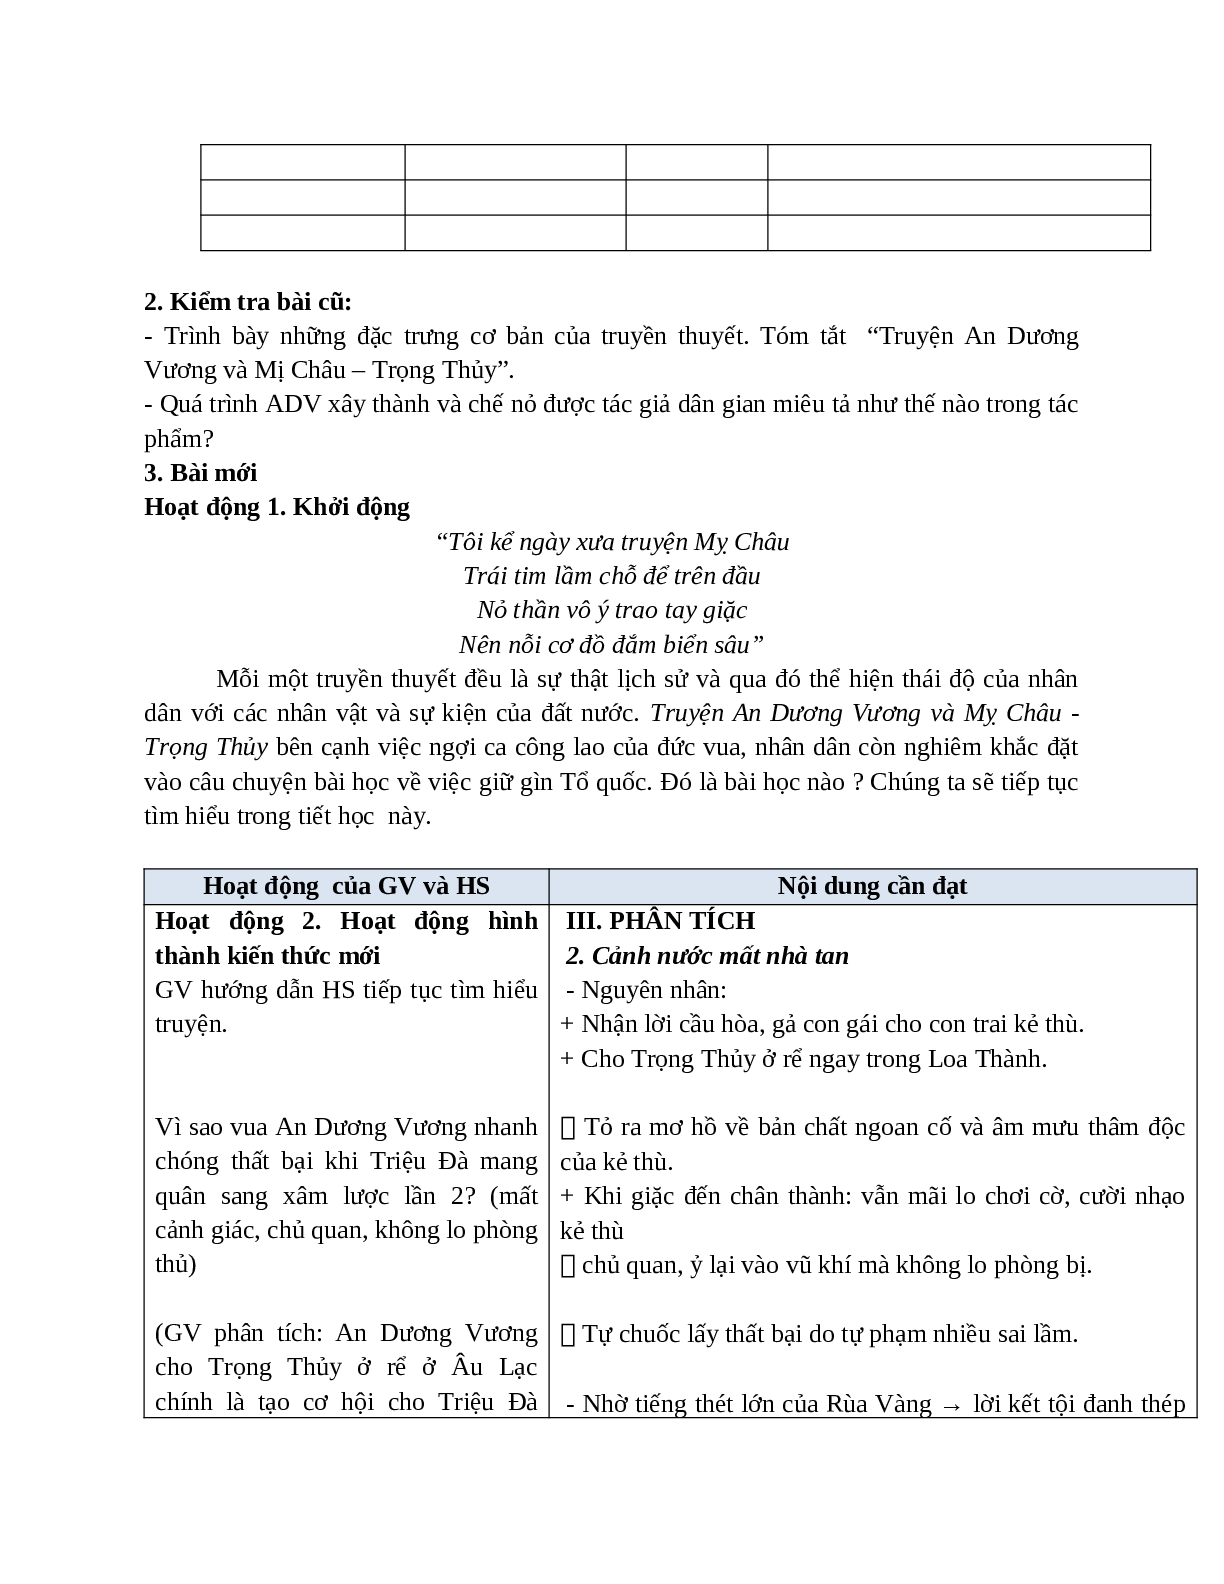 Giáo án Ngữ văn 10, tập 1, bài Truyện An Dương Vương và Mị Châu - Trọng Thủy (tiết 2)mới nhất (trang 2)